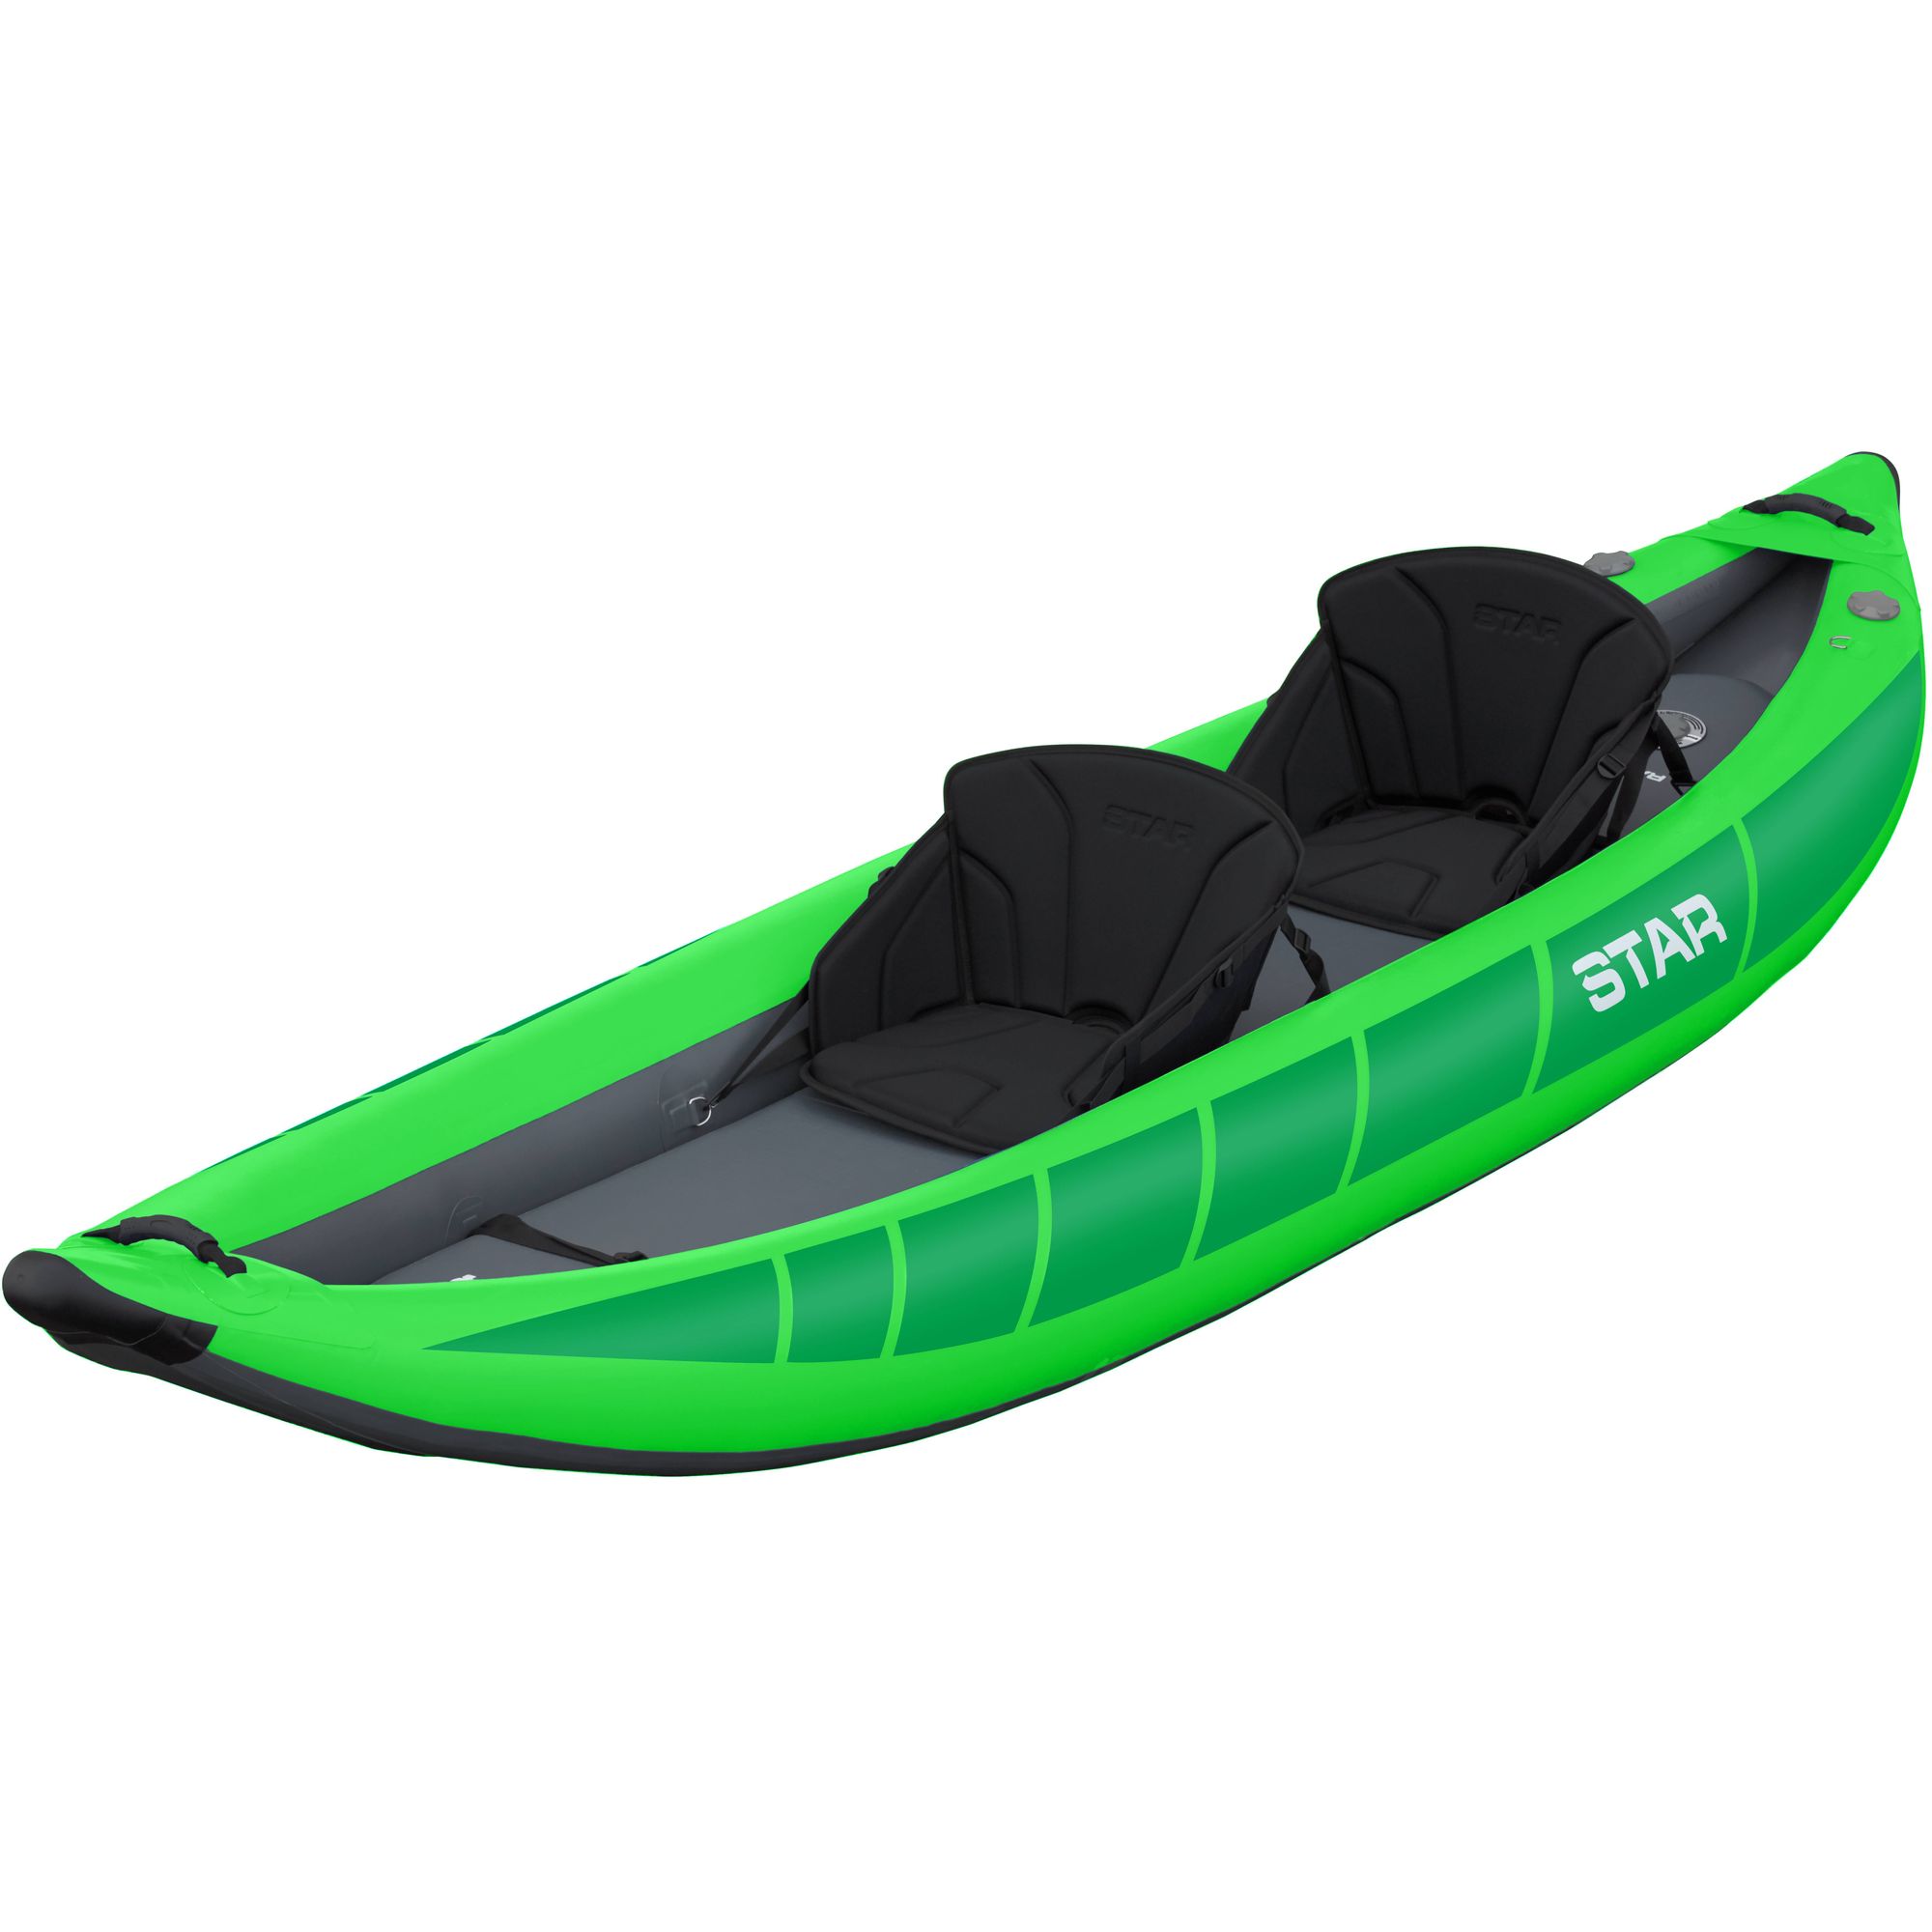 STAR Raven II Inflatable Kayak aufblasbares zweier Tandem